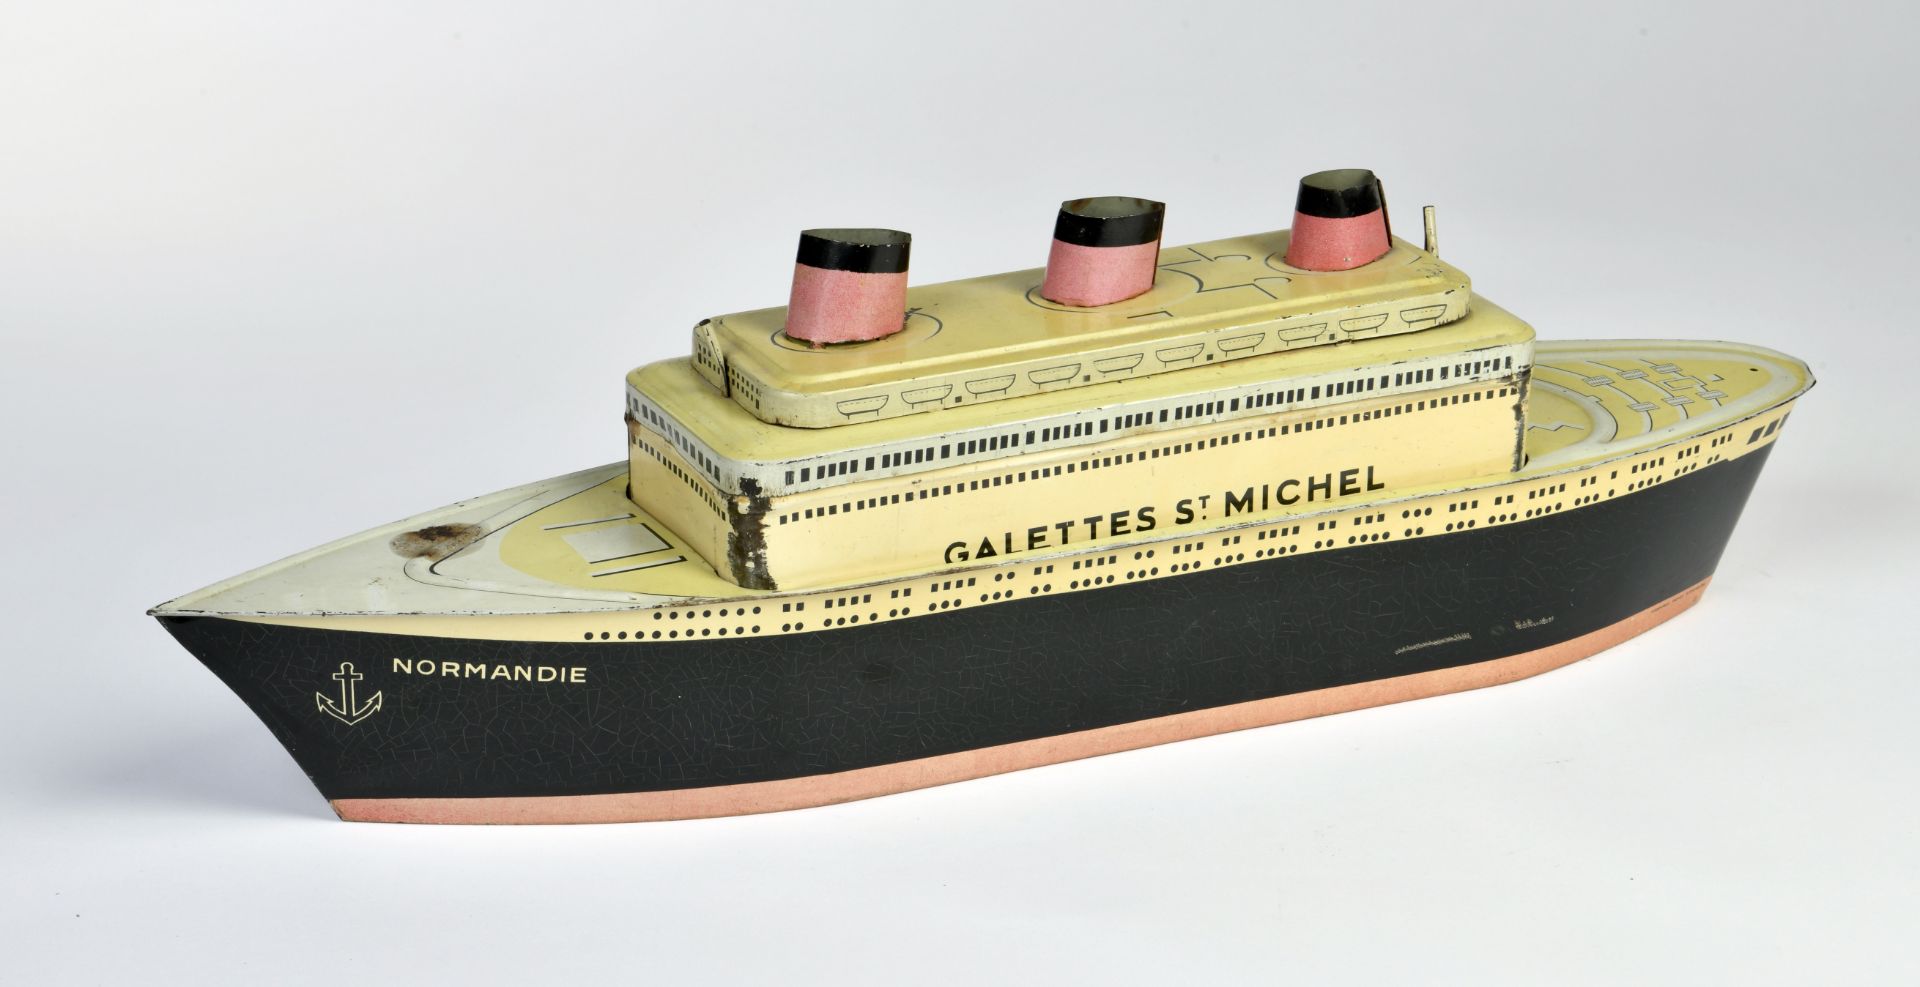 Ship biscuit tin can "Normandie", Galettes St. Michel, 56 cm, paint d., C 2-